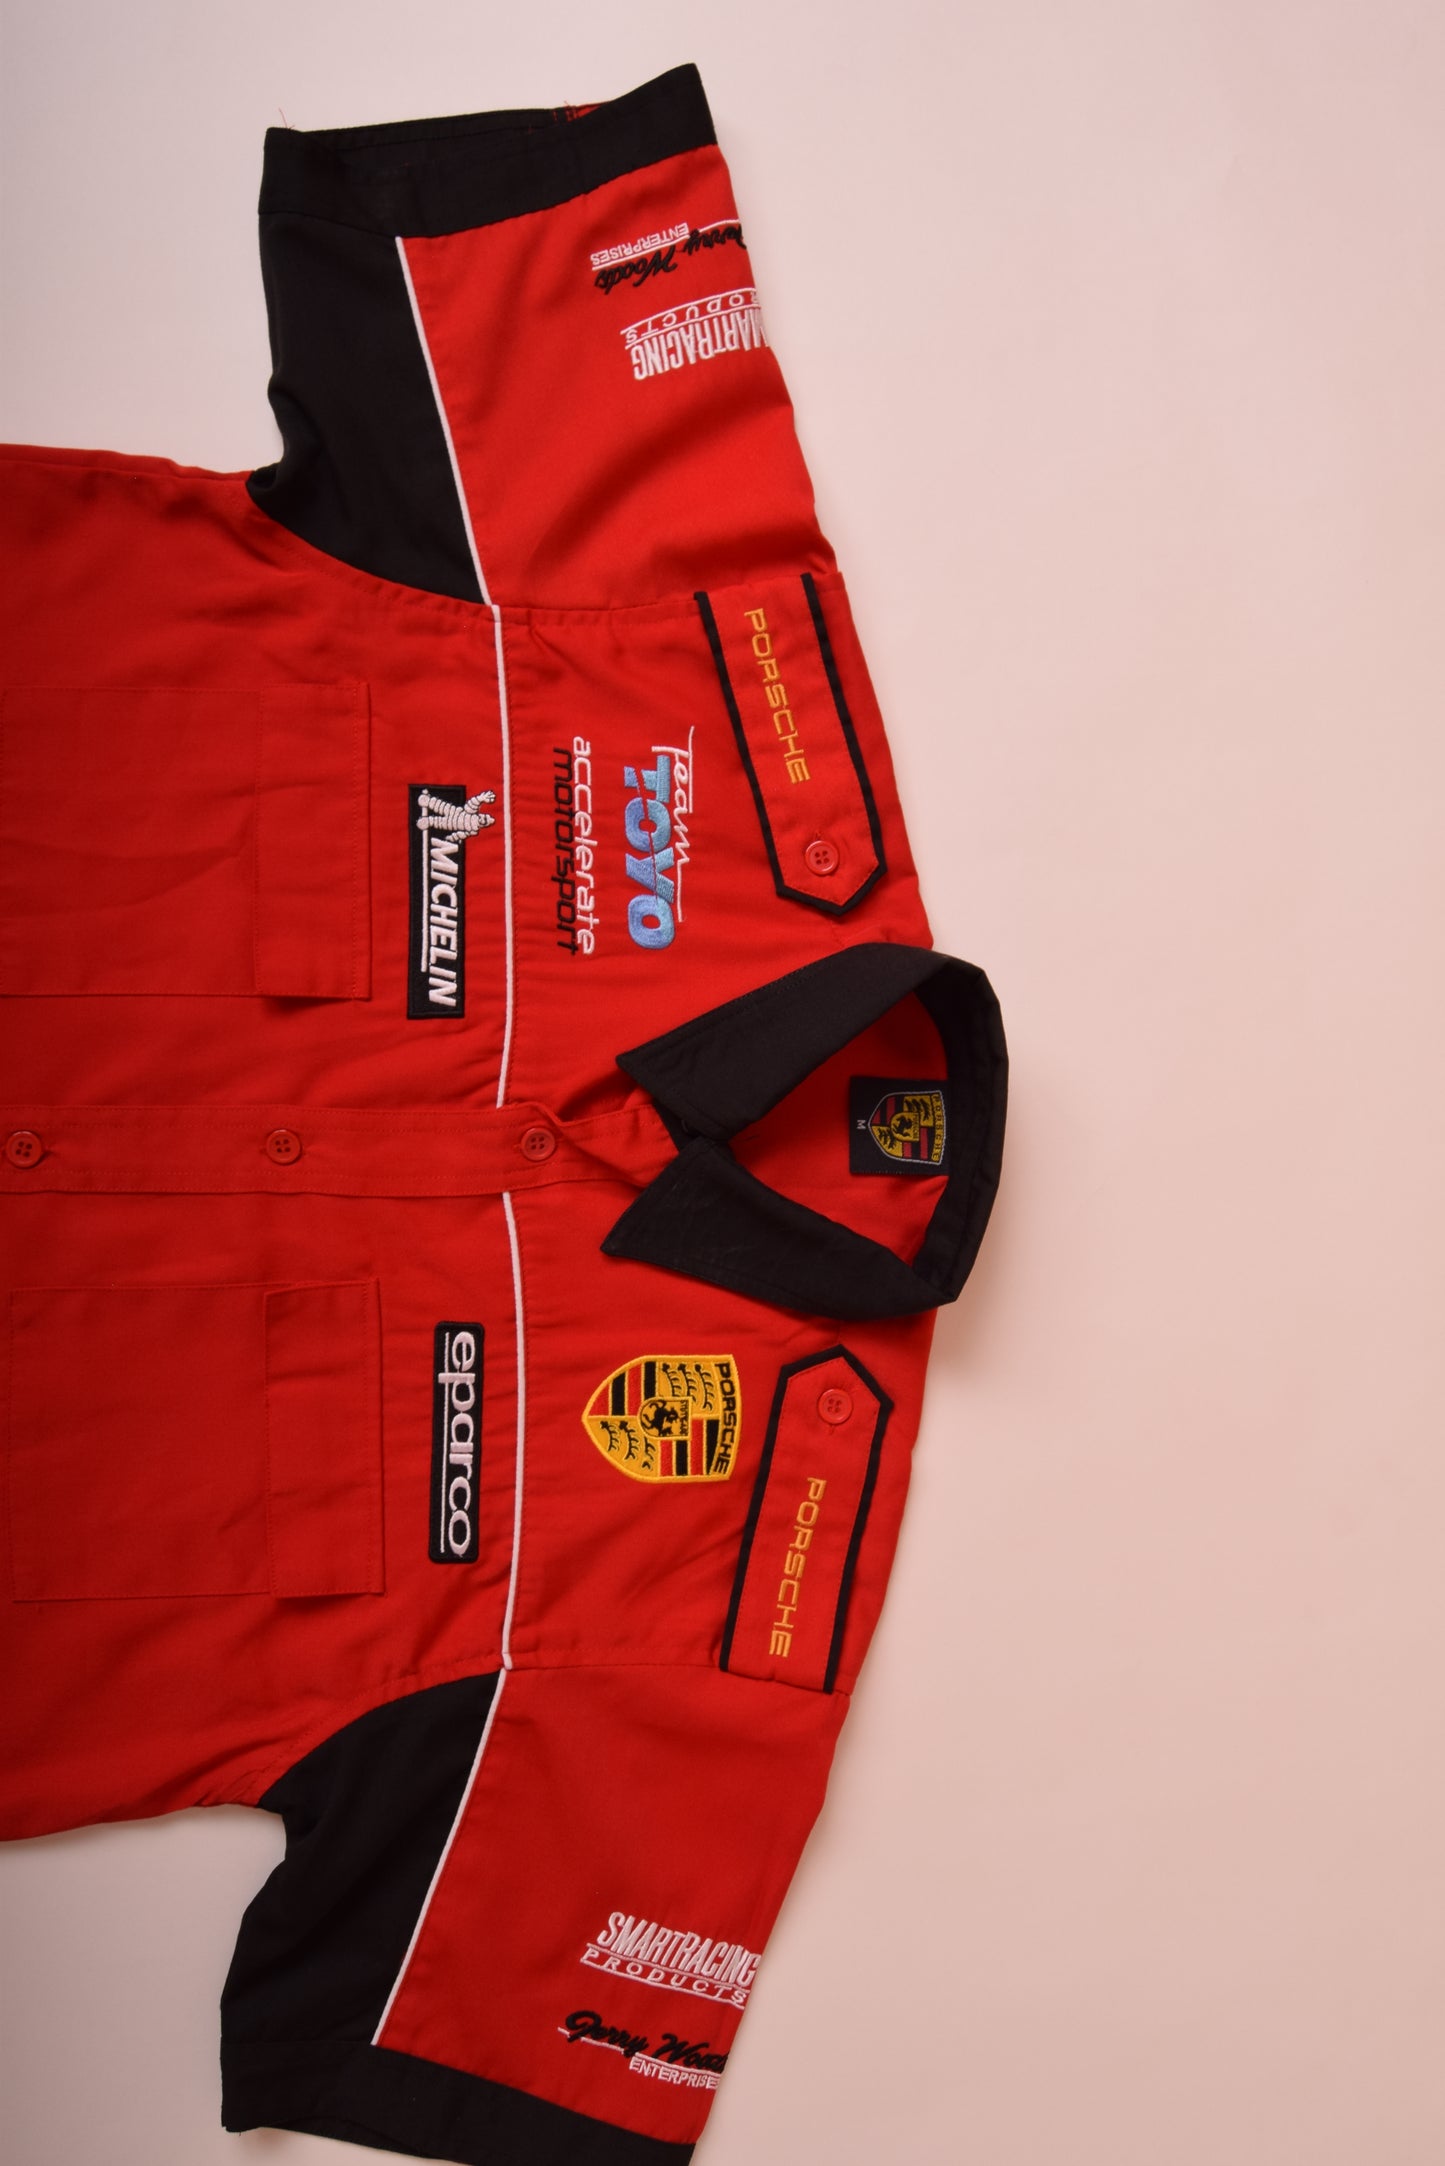 Porsche Shirt Size M Red